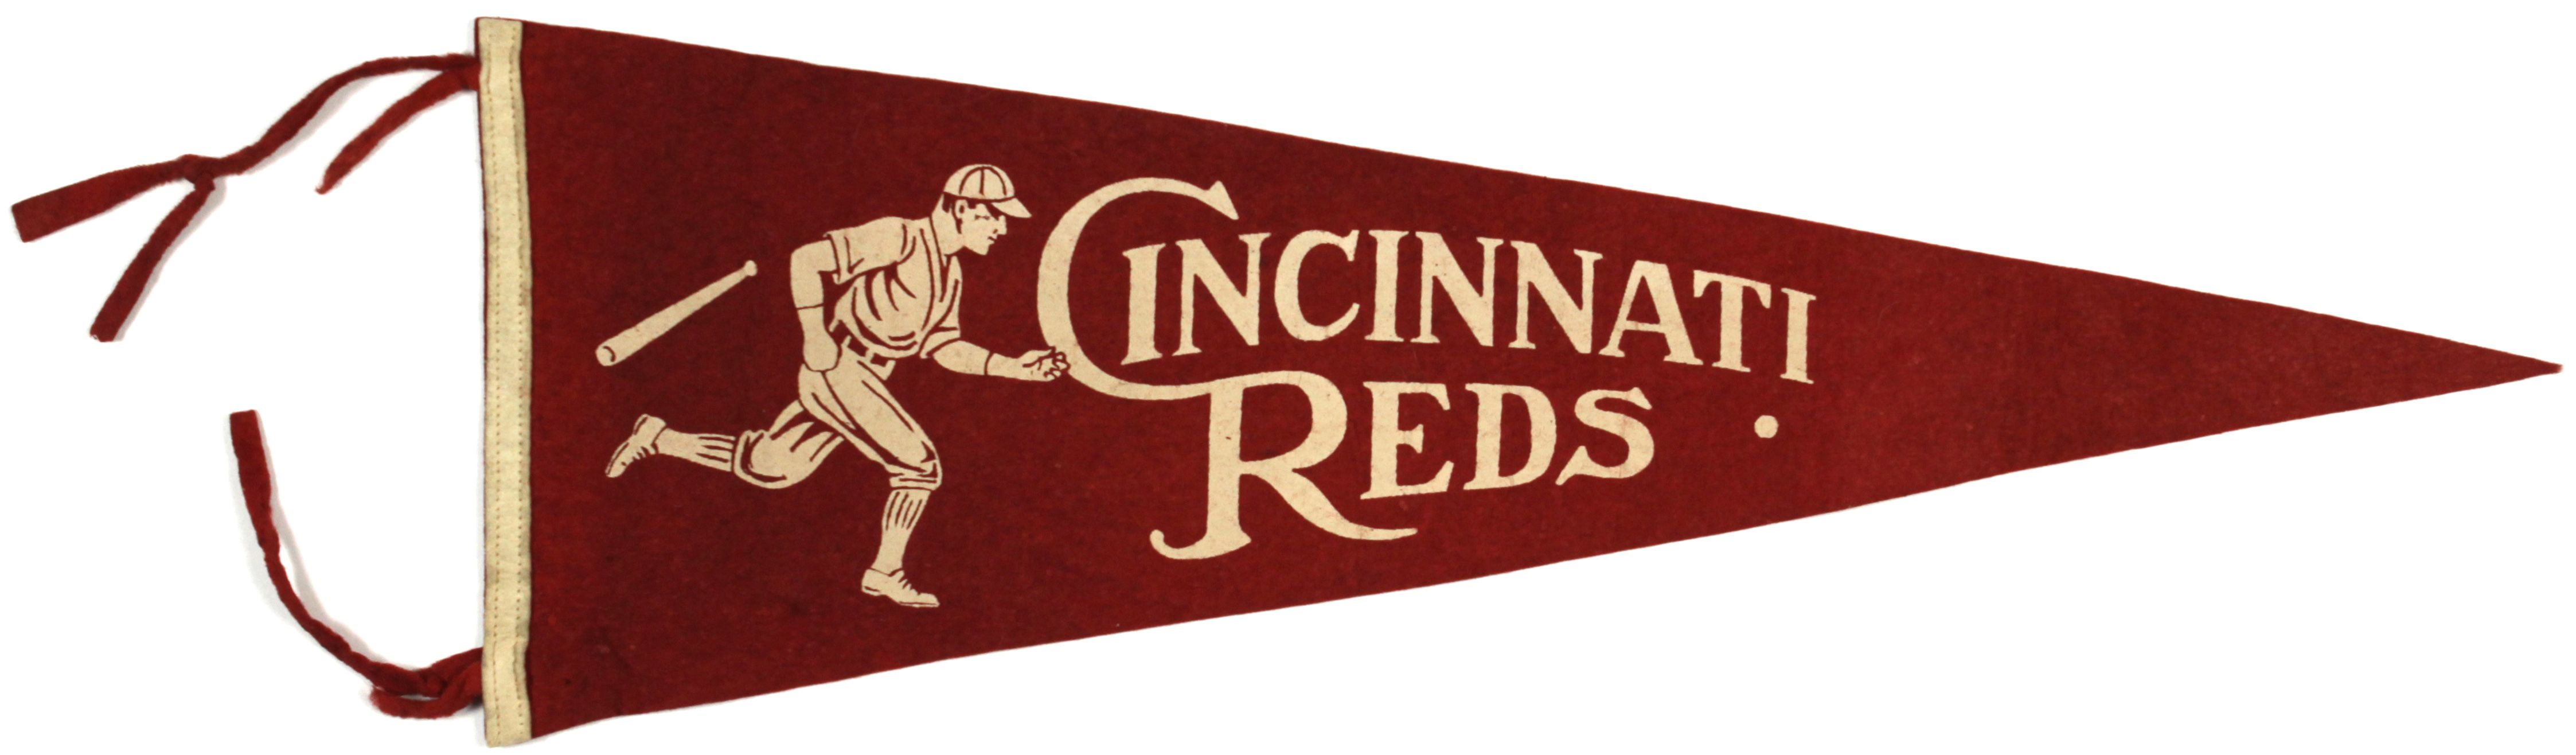 Lot Detail - 1930s-40s Cincinnati Reds Vintage Pennant